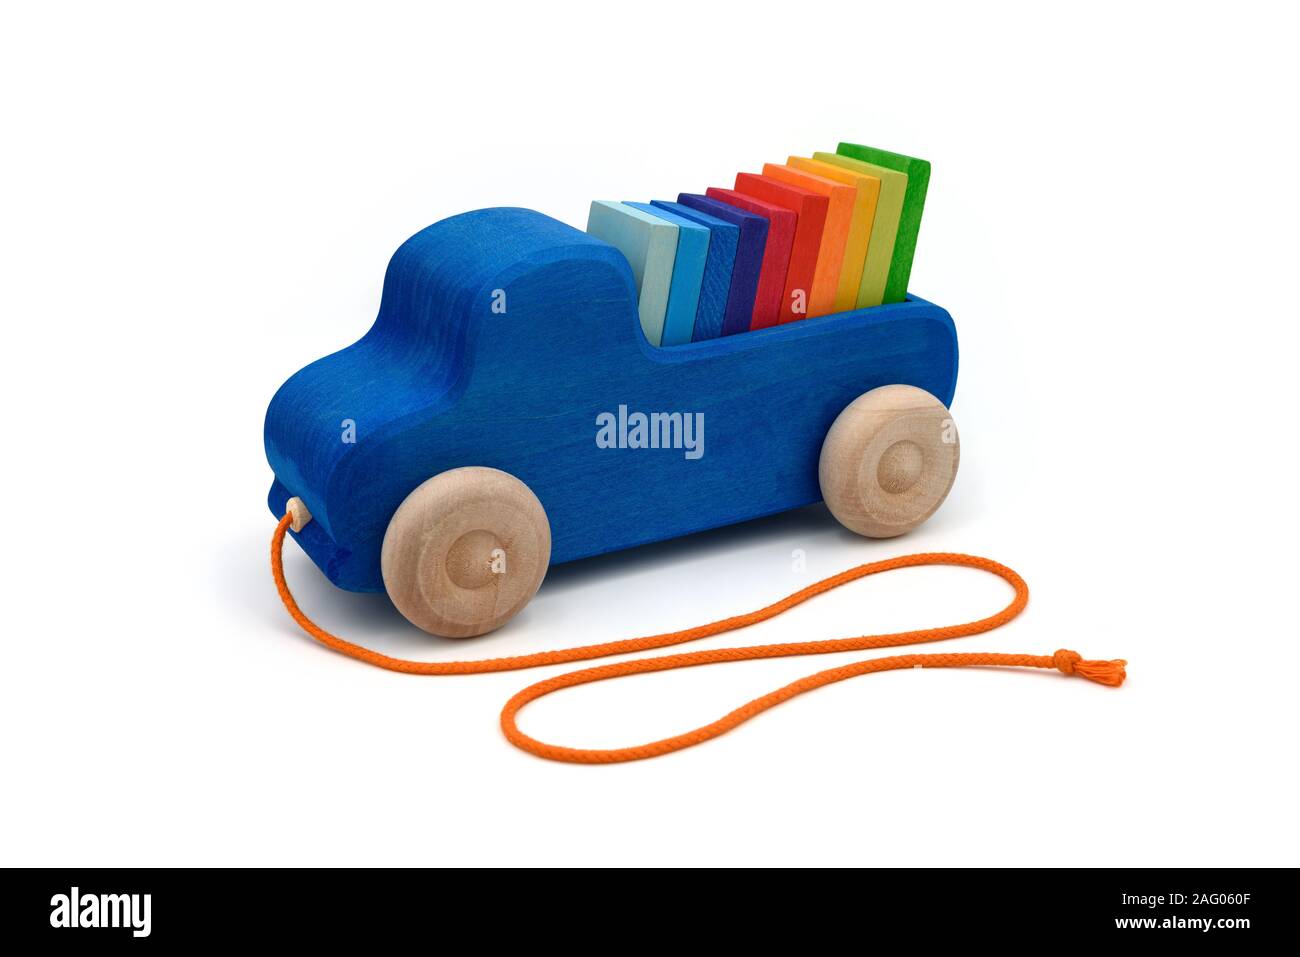 Holzspielzeug Pickup truck in Blau mit farbigen Fliesen wie ein Regenbogen auf weißem Hintergrund klassifiziert. Stockfoto